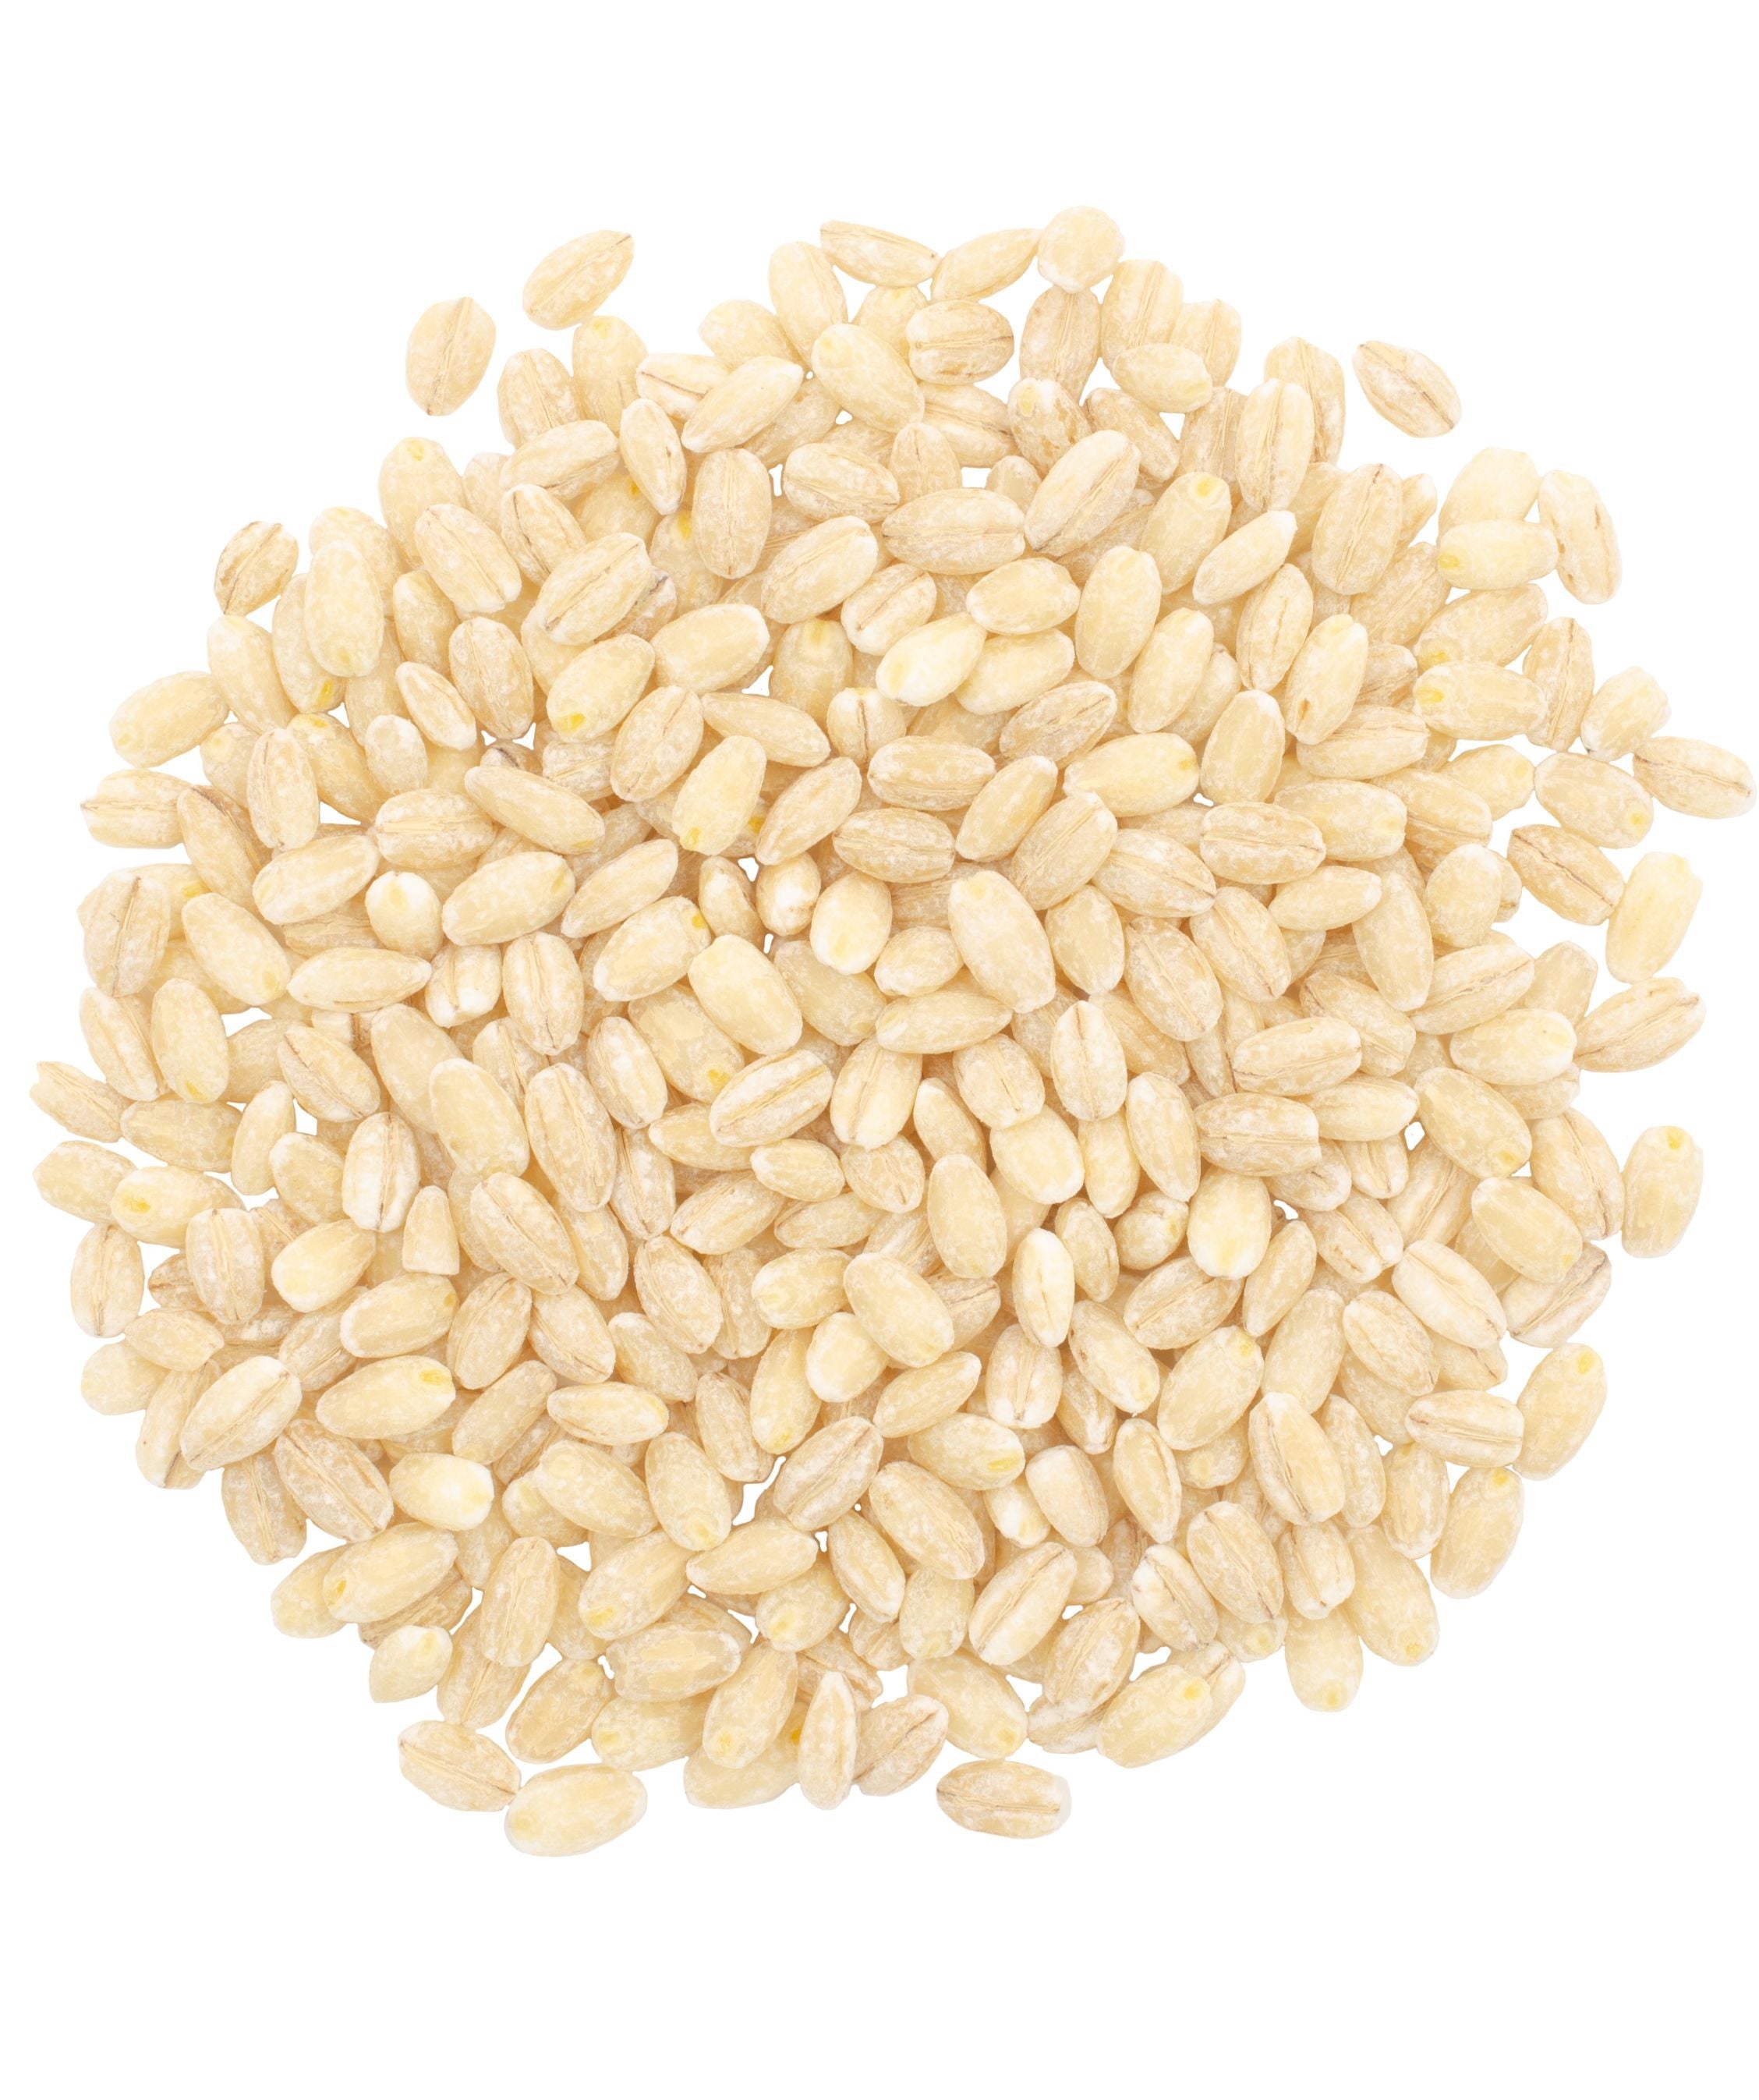 Pearled Barley | 25 LB Bucket